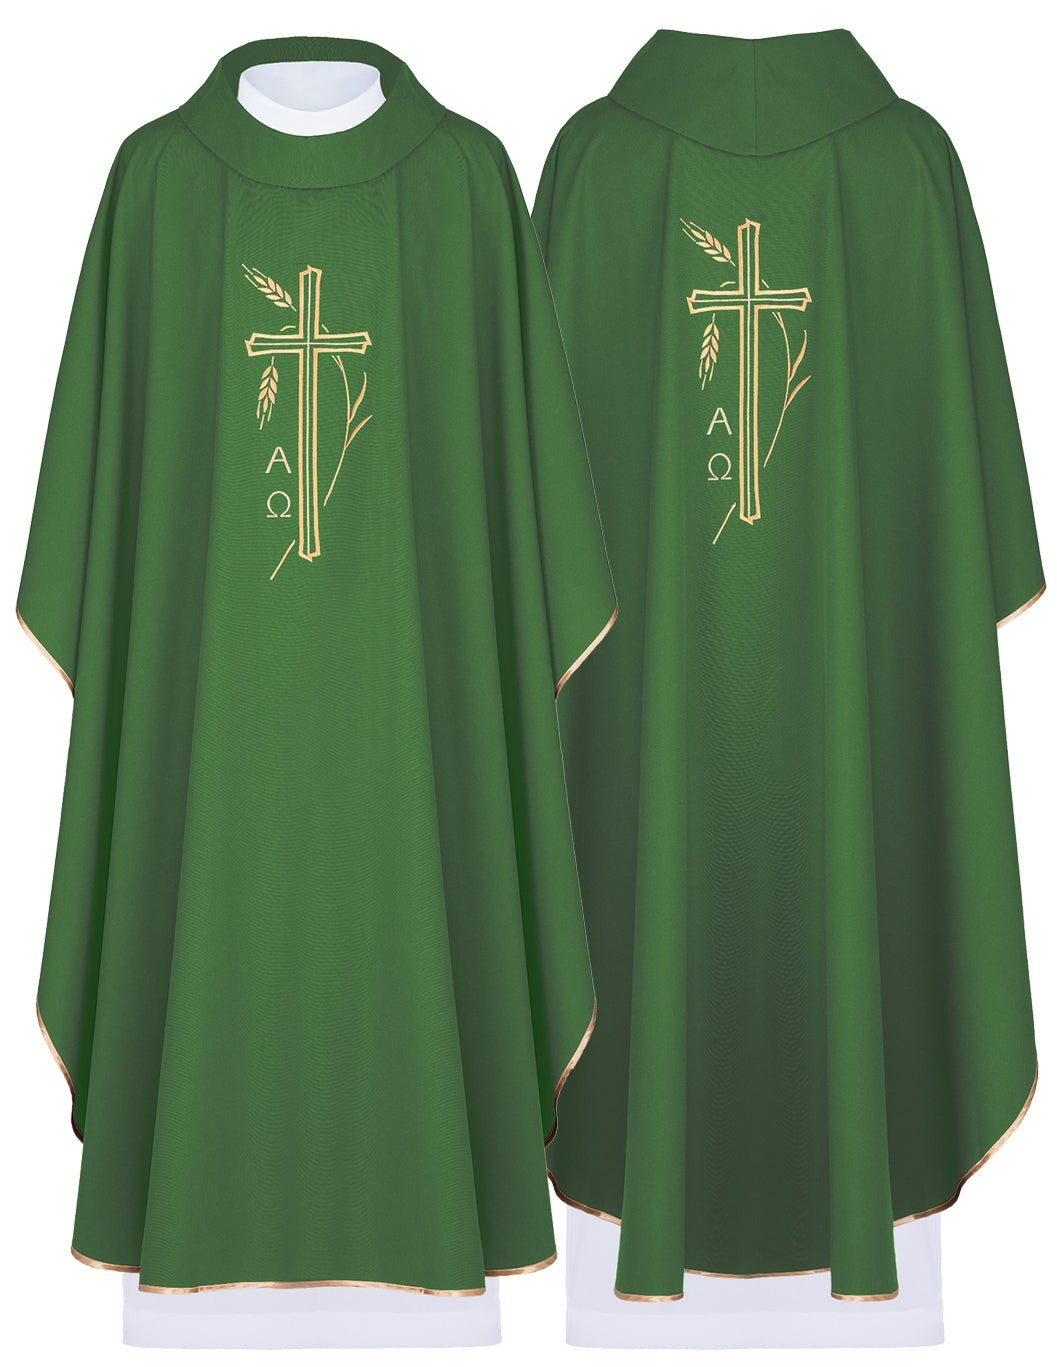 Ornat z krzyżem i haftem Alfa i Omega w kolorze zielonym